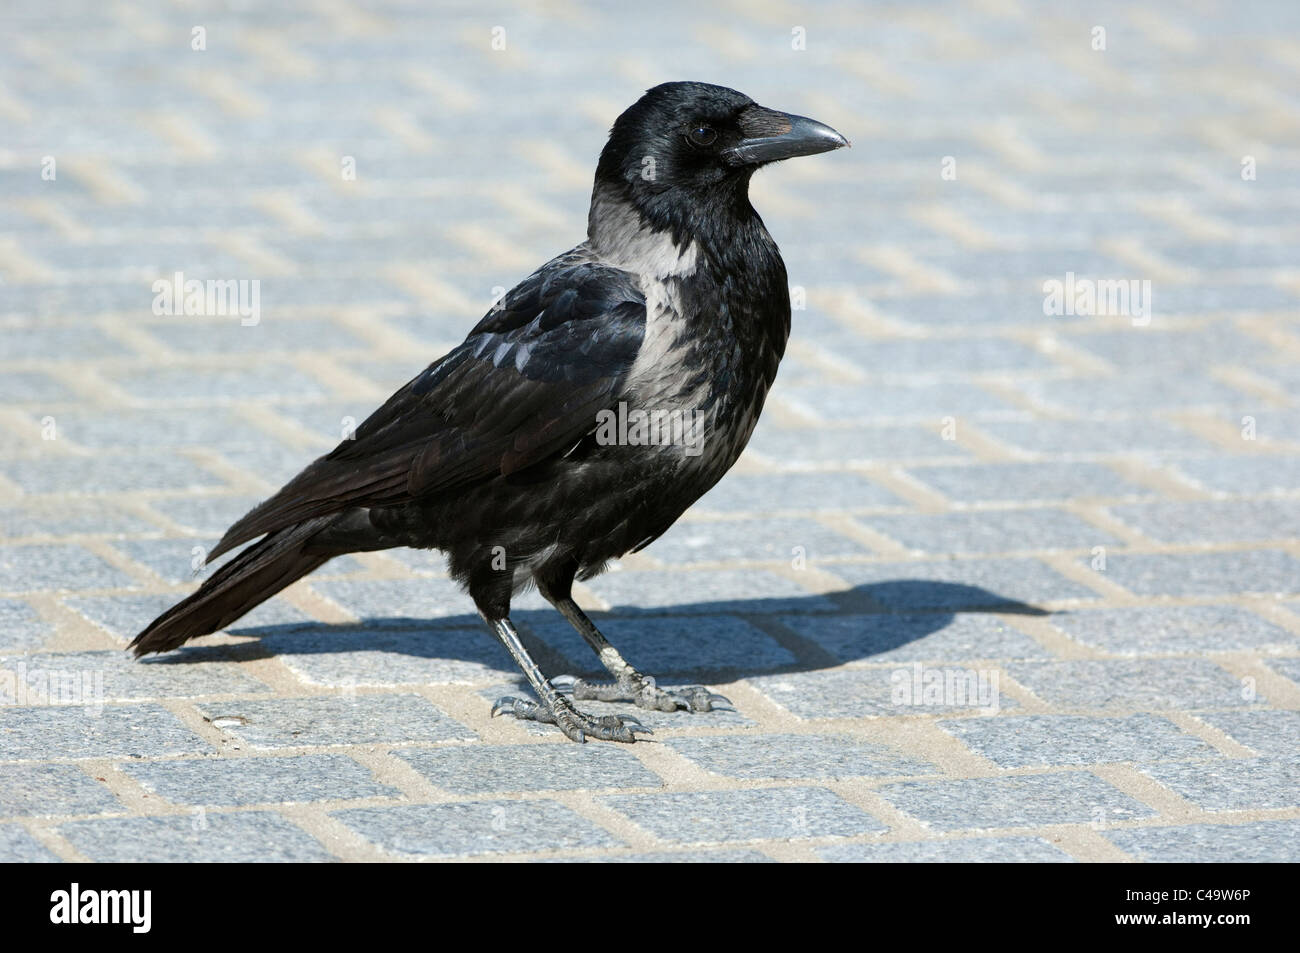 Cornacchia Mantellata (Corvus corone cornix, Corvus cornix) in piedi sul selciato. Foto Stock